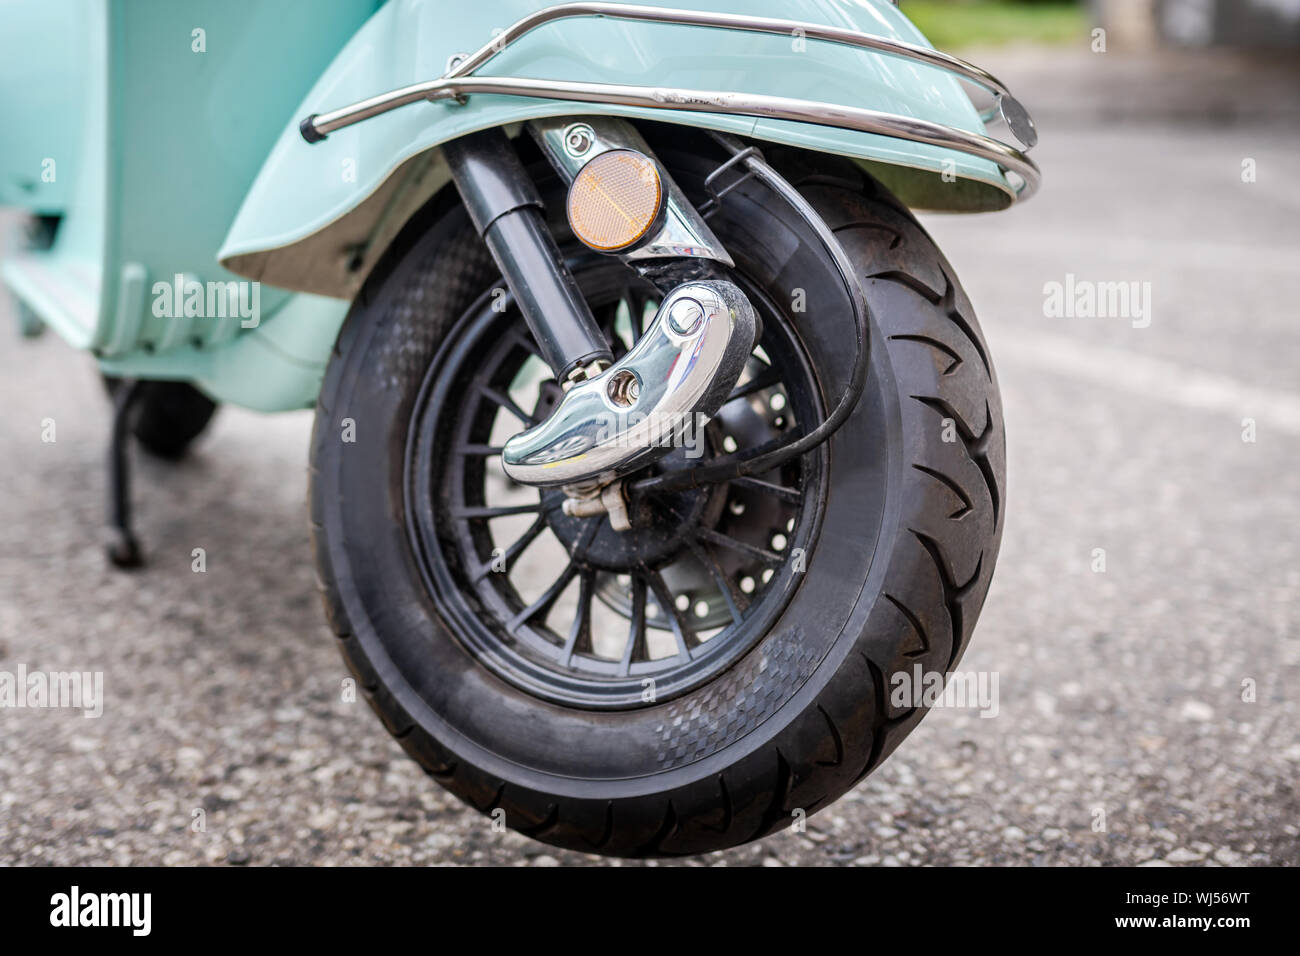 De roue avant moto scooter électrique Photo Stock - Alamy